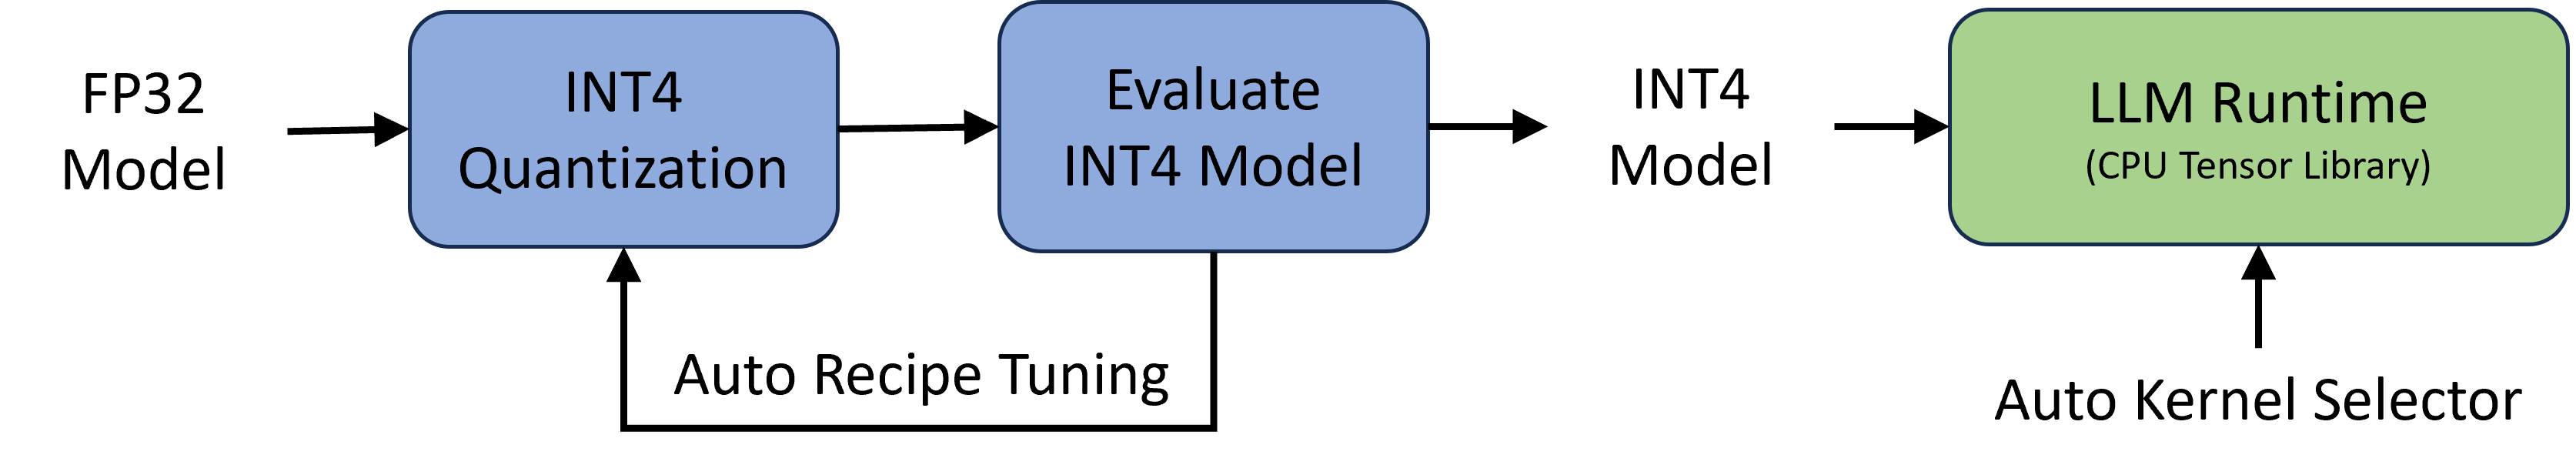 图 1: 左边是自动 INT4 量化流程的部分：它从一个 FP32 模型开始，使用预设的 INT4 量化规则来评估 INT4 模型的准确性；如果 INT4 模型的准确度已经足够，那么调整规则的步骤可以省略。右边是为高效 LLM 推理设计的简化运行环境，它是建立在一个 CPU 张量库之上，并配有自动选择内核的功能。